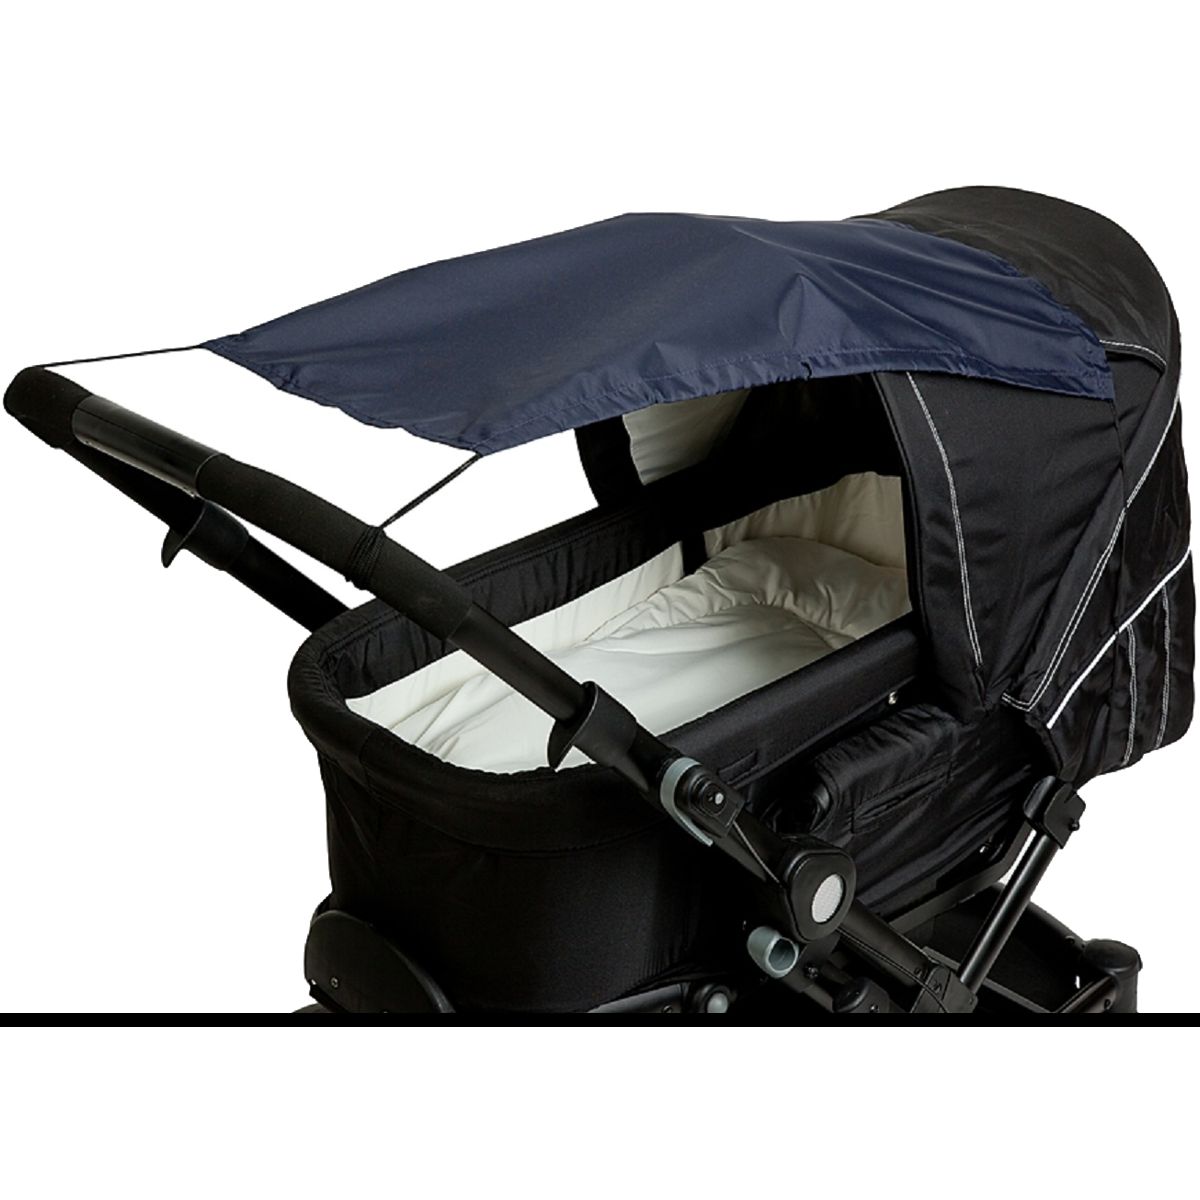 SONNENSEGEL Segel UV für Buggy Kinderwagen Schirm Sonnenschutz Baby Kind 50+ 